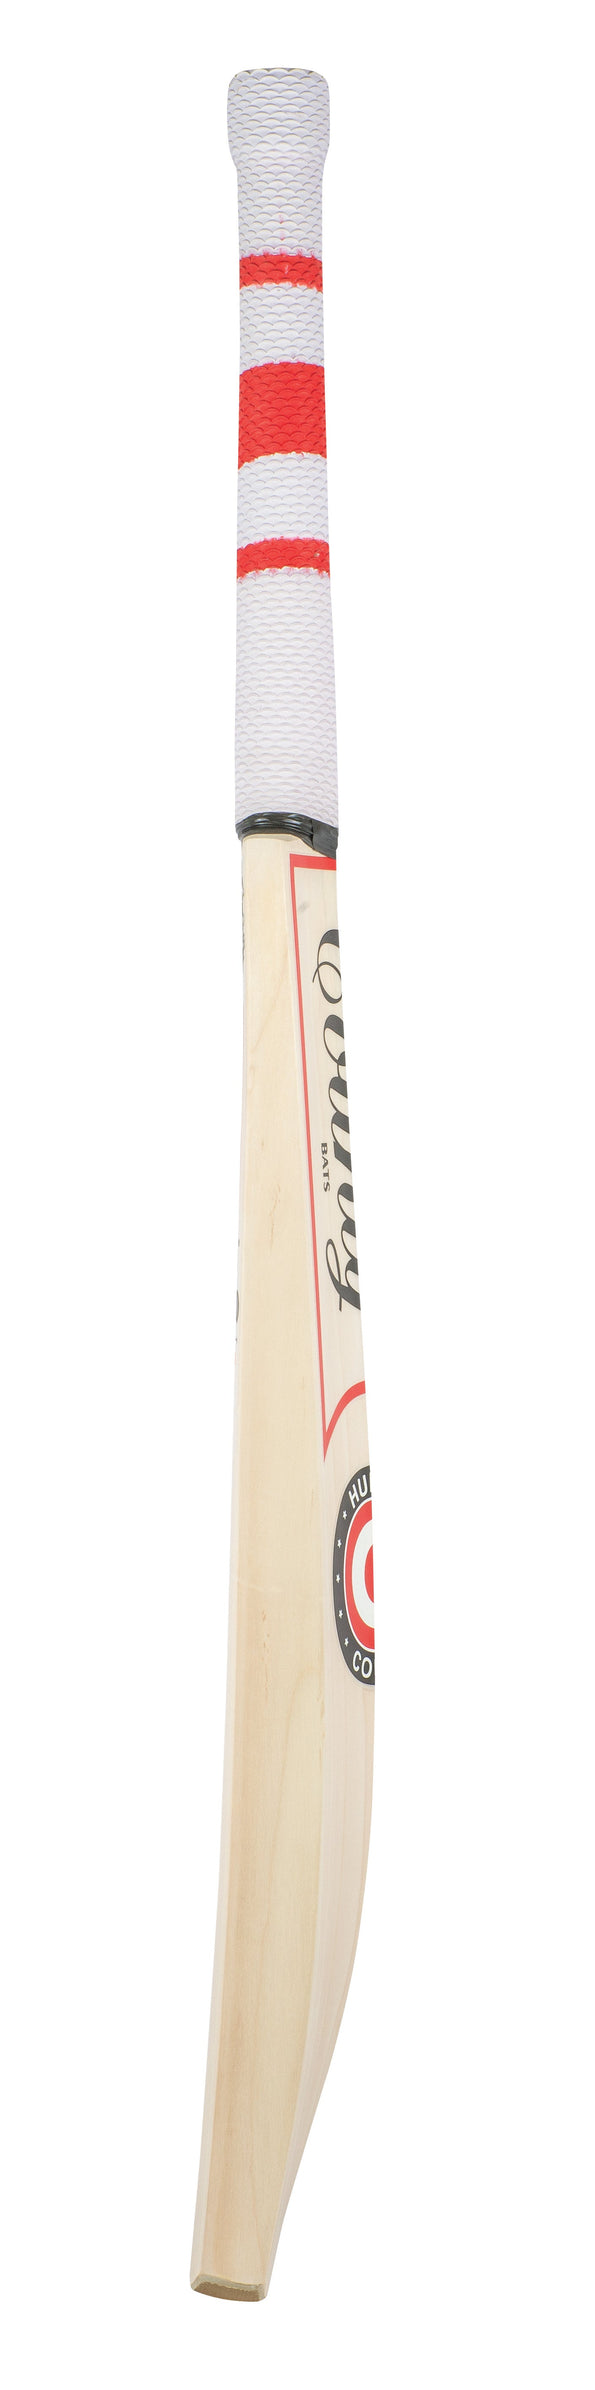 Hunts County Maximo Special SH Cricket Bat